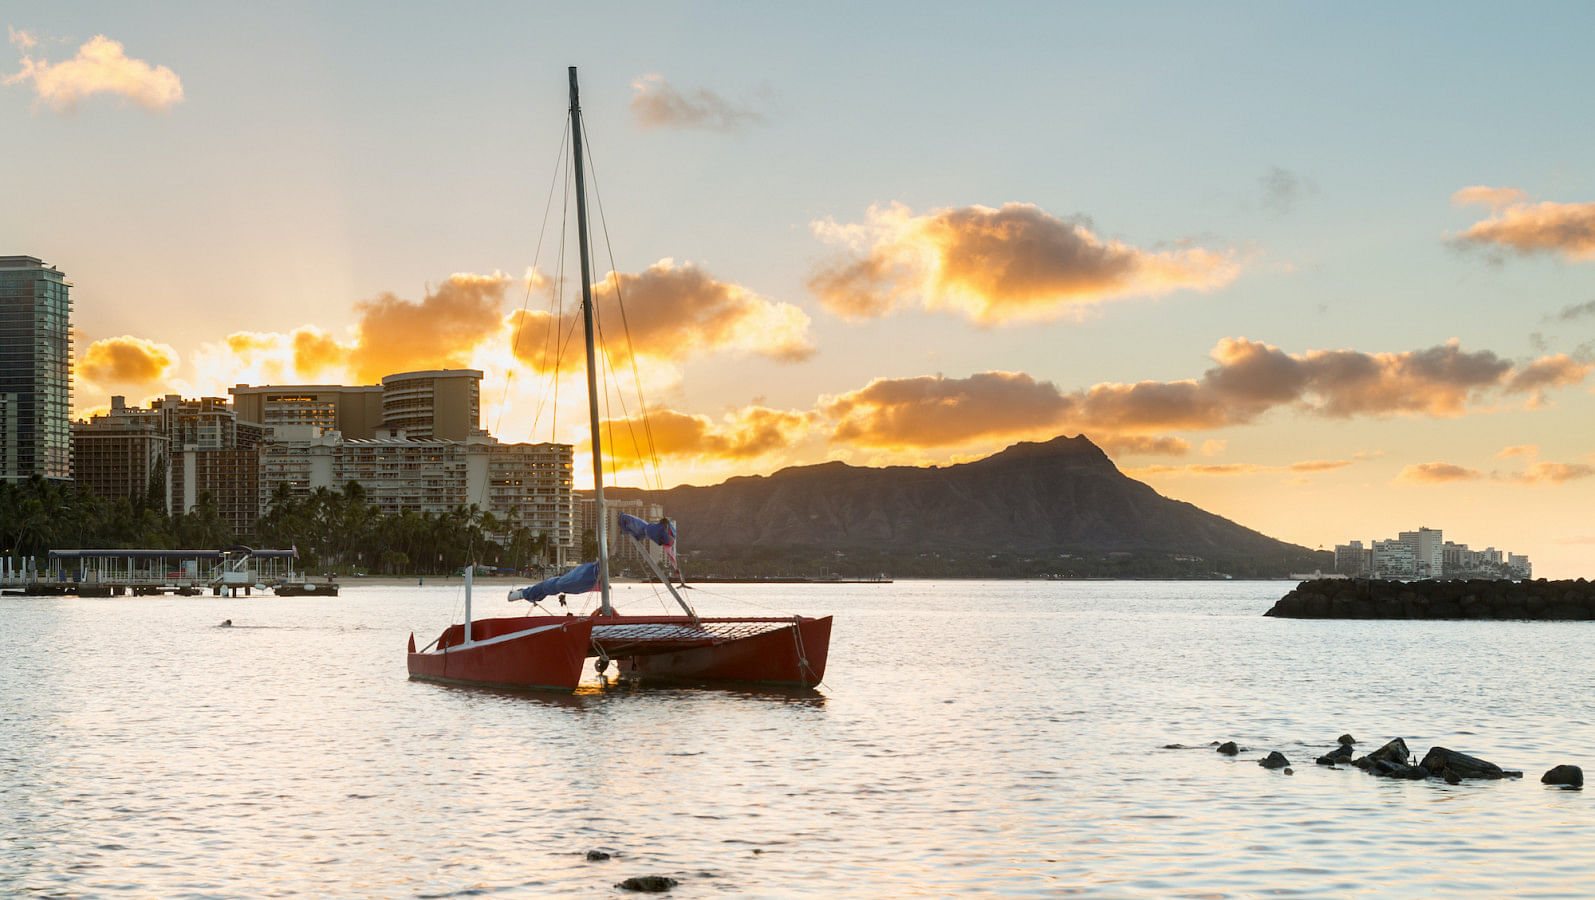 Hyr en båt i Hawaii